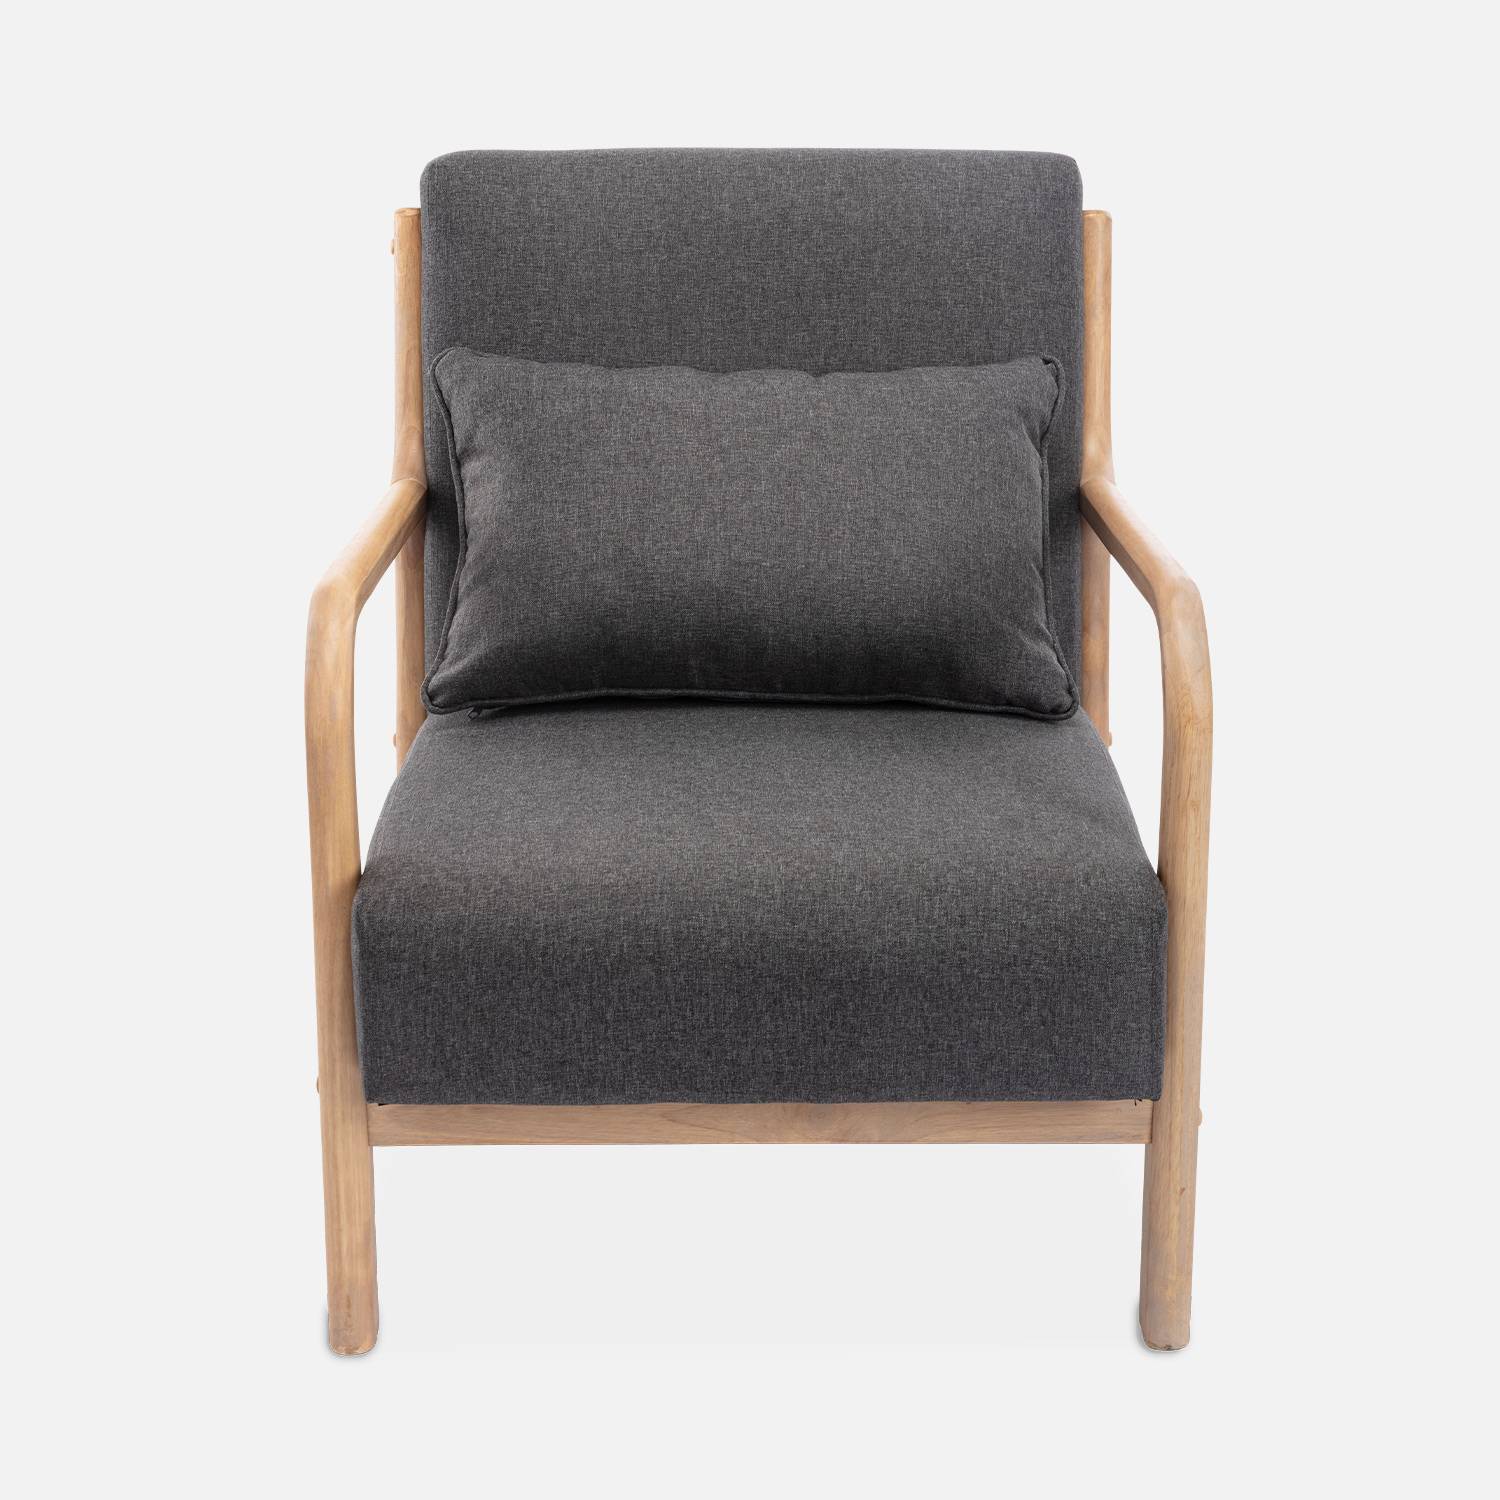 Fauteuil design en bois et tissu, 1 place droit fixe, pieds compas scandinave, structure en bois solide, assise confortable, gris foncé Photo5